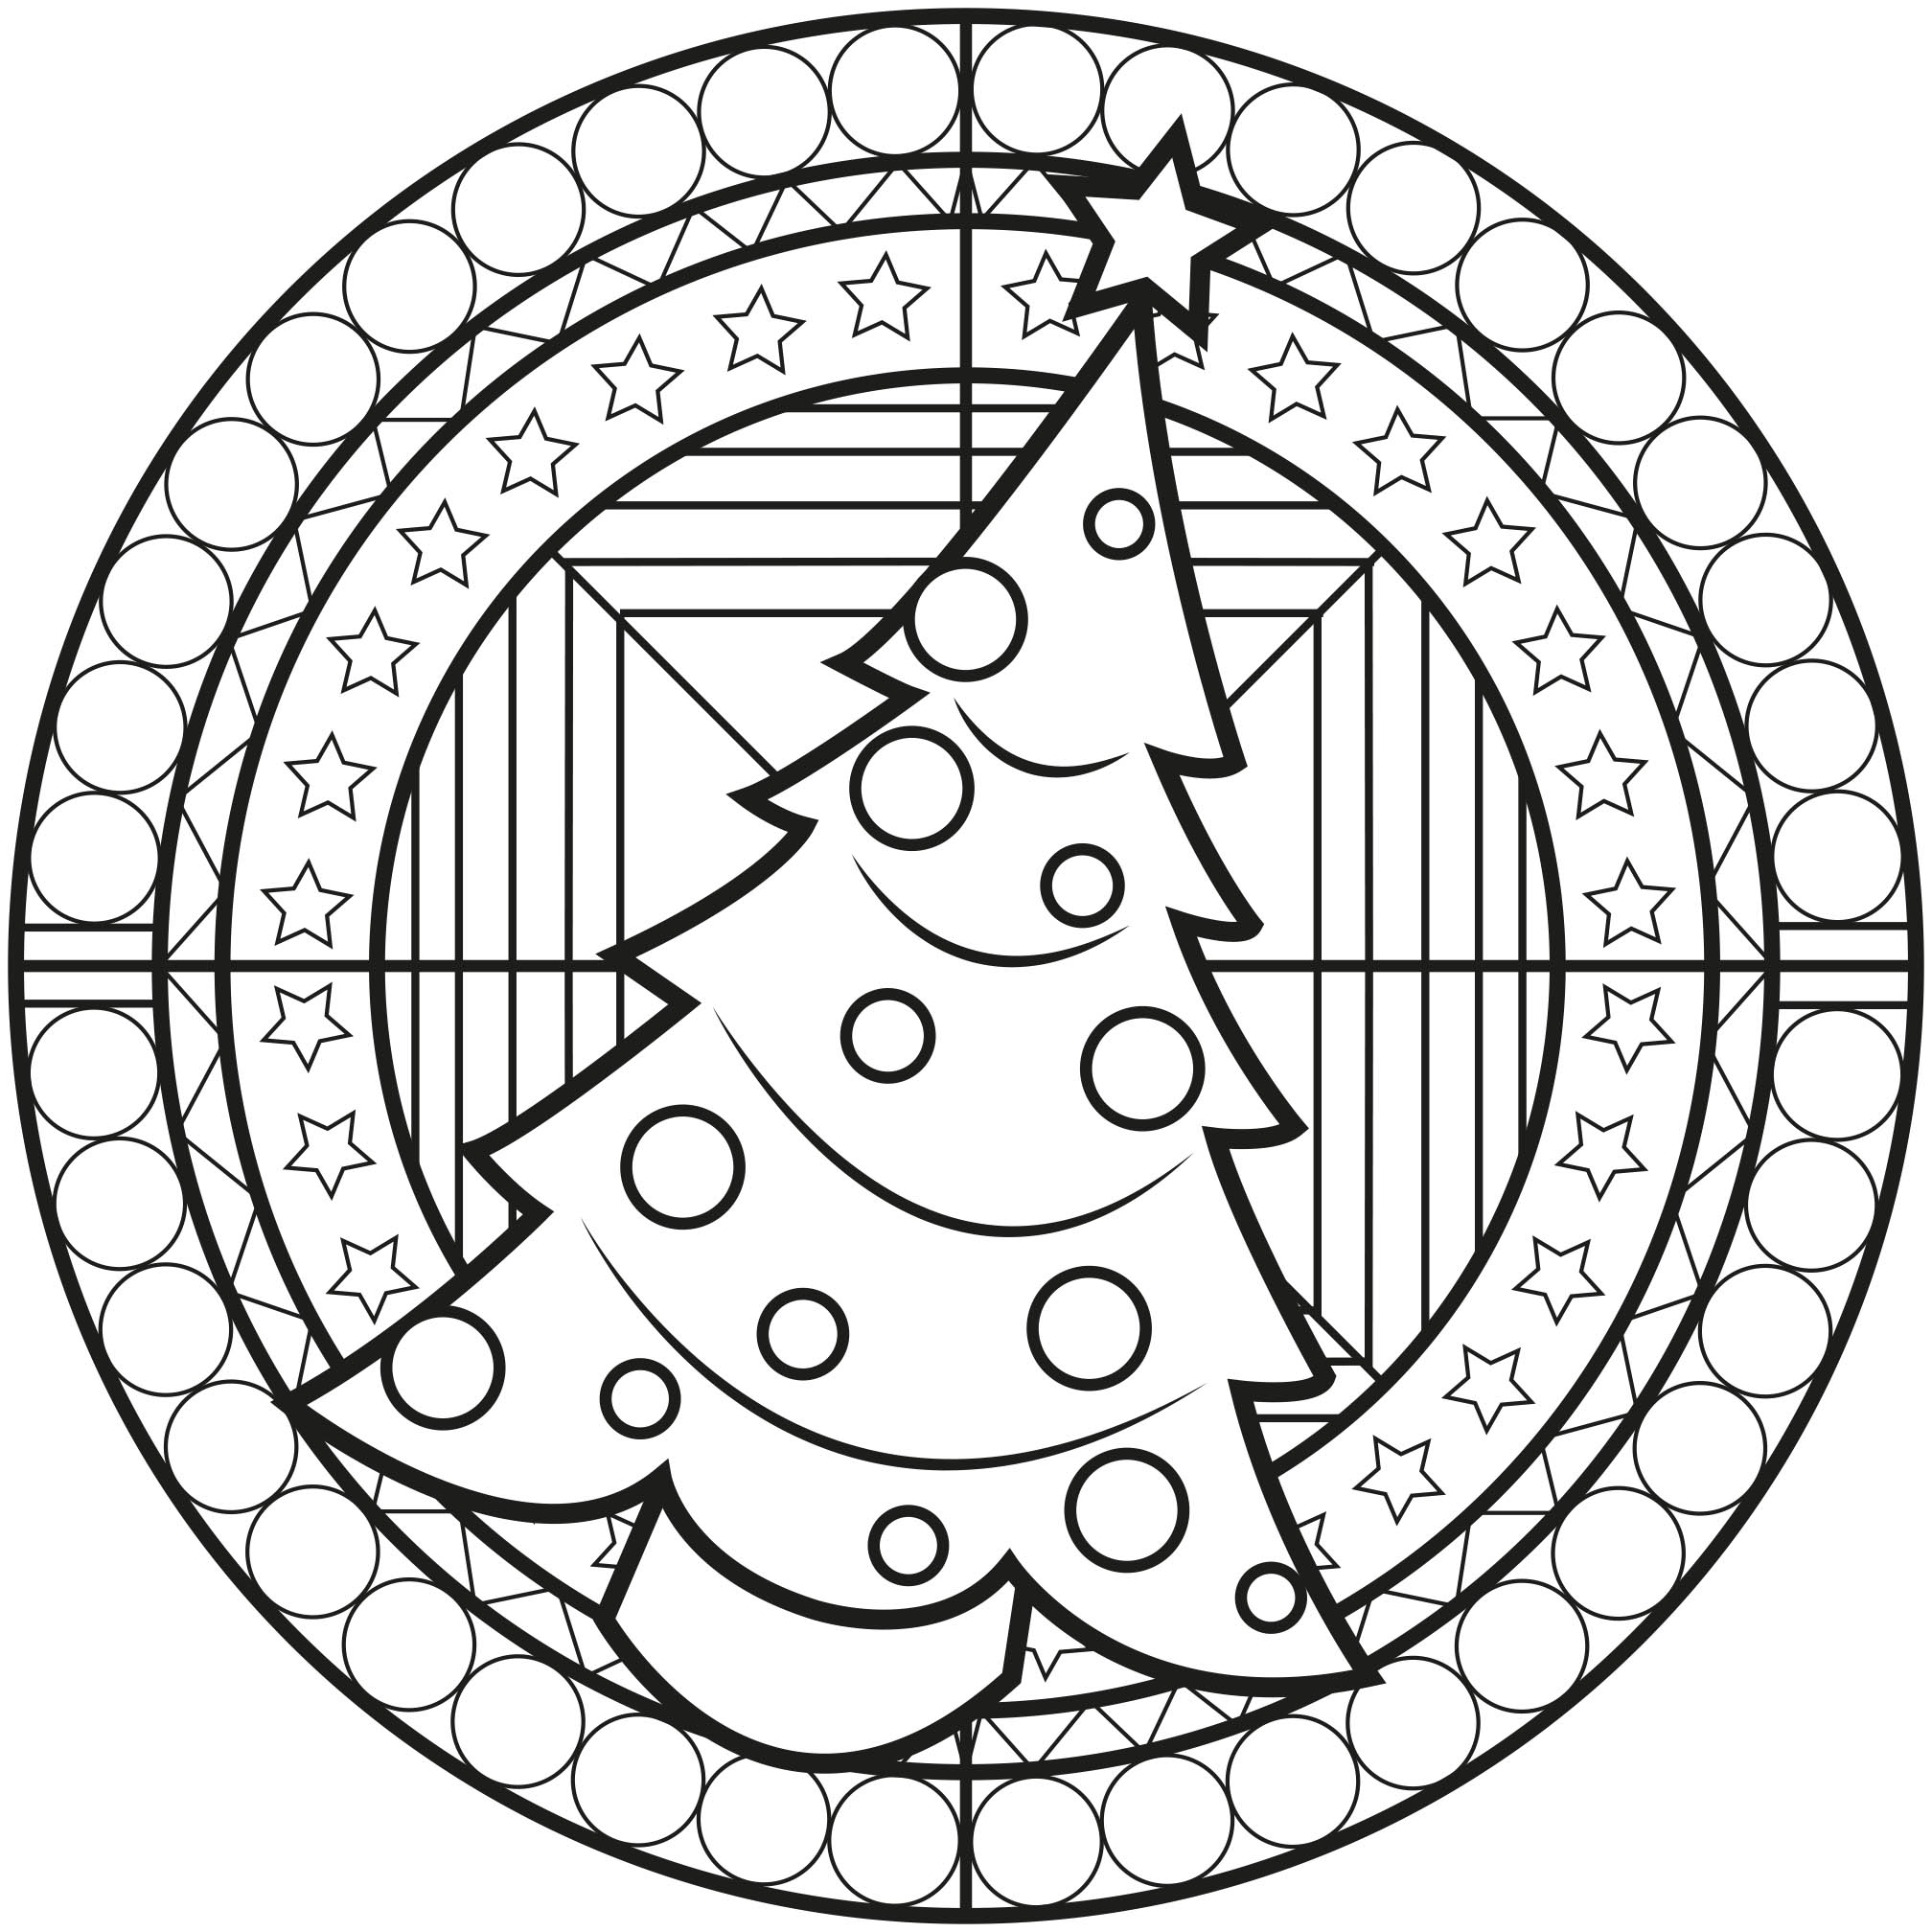 Weihnachtsbaum in einem Mandala mit hübschen Motiven. Ein perfektes Ausmalbild für Kinder.